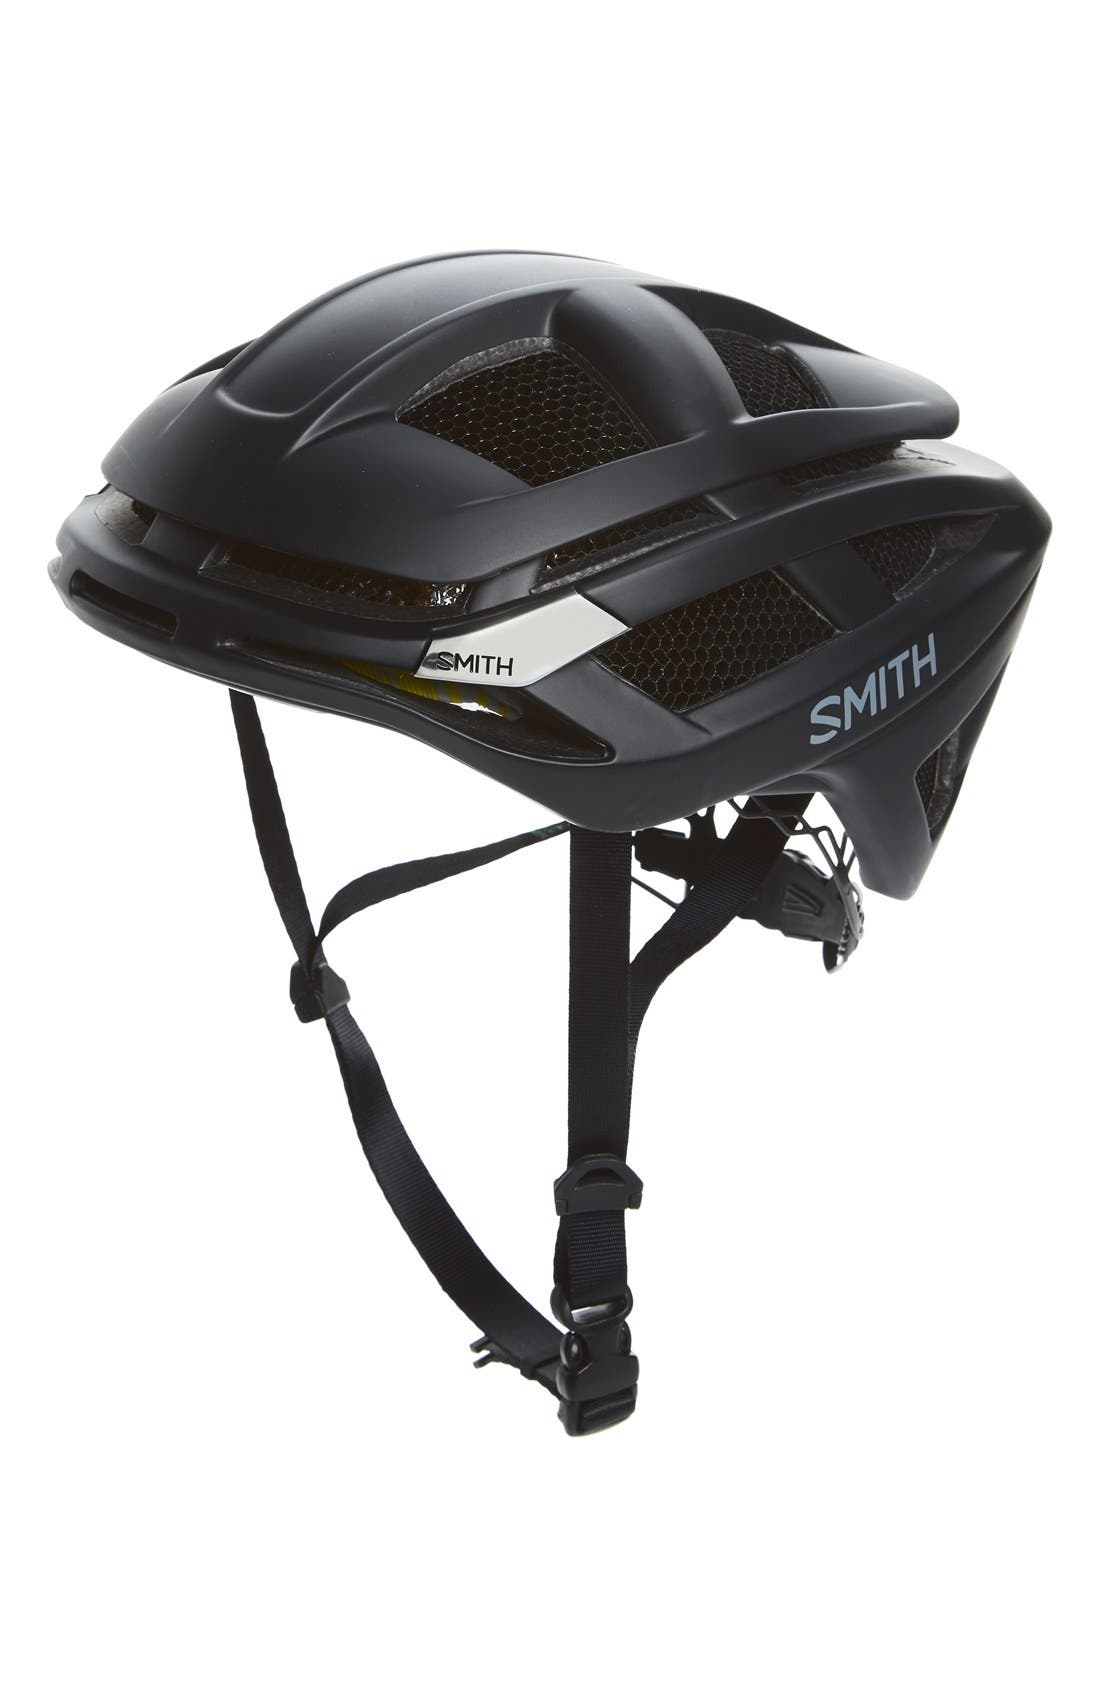 Smith Overtake Helmet Size Chart